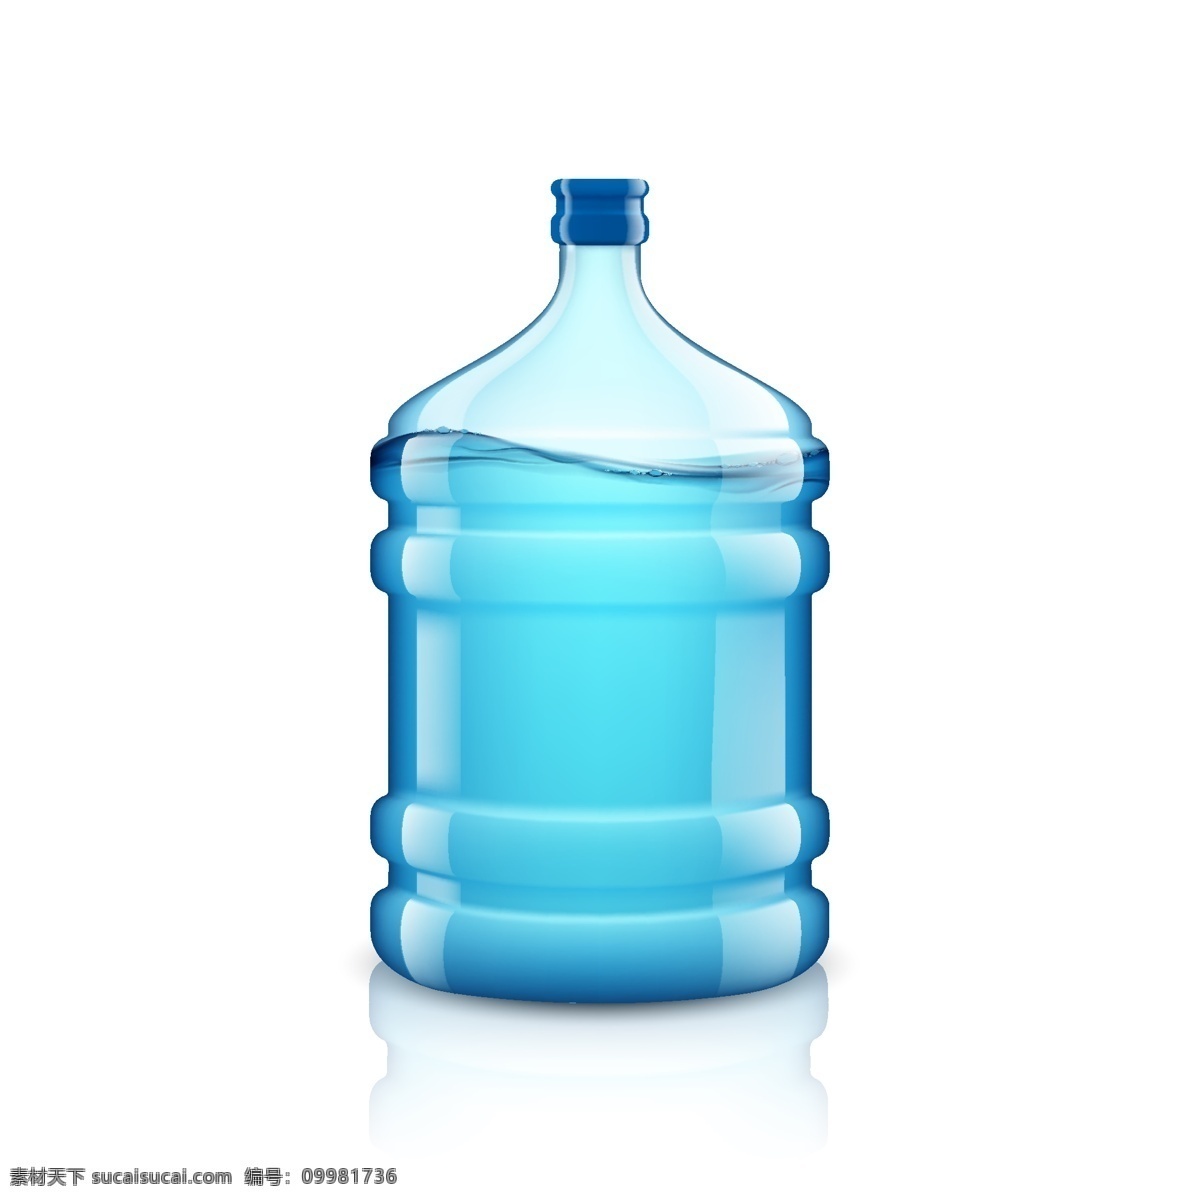 水桶 桶装水 饮用水桶 纯净水桶 桶 塑料水桶 塑料桶 生活素材 素材元素 底纹边框 其他素材